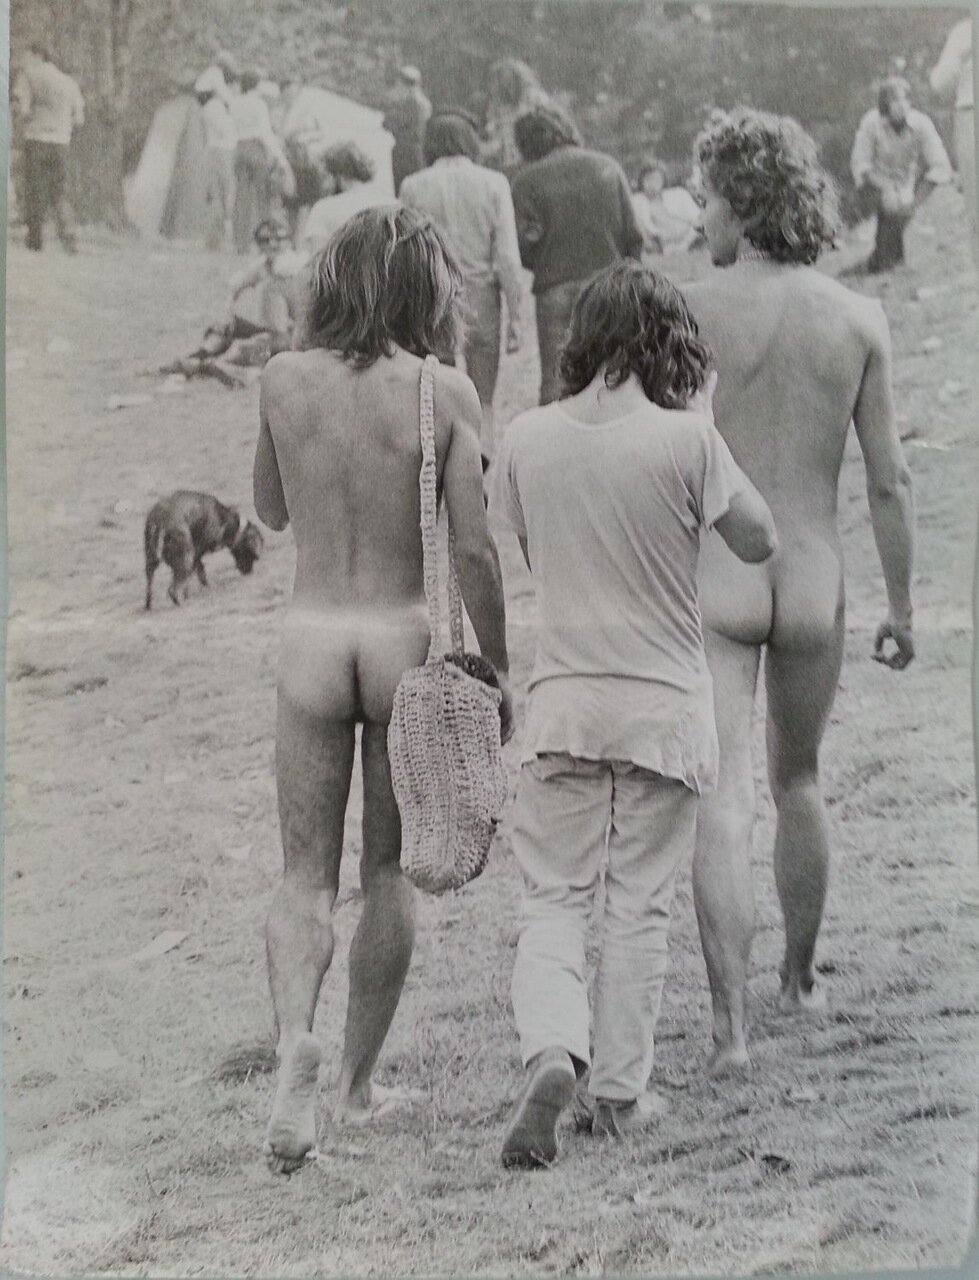 Поп-фестиваль молодёжи в итальянском Балабио. 25-26 сентября 1971 года.